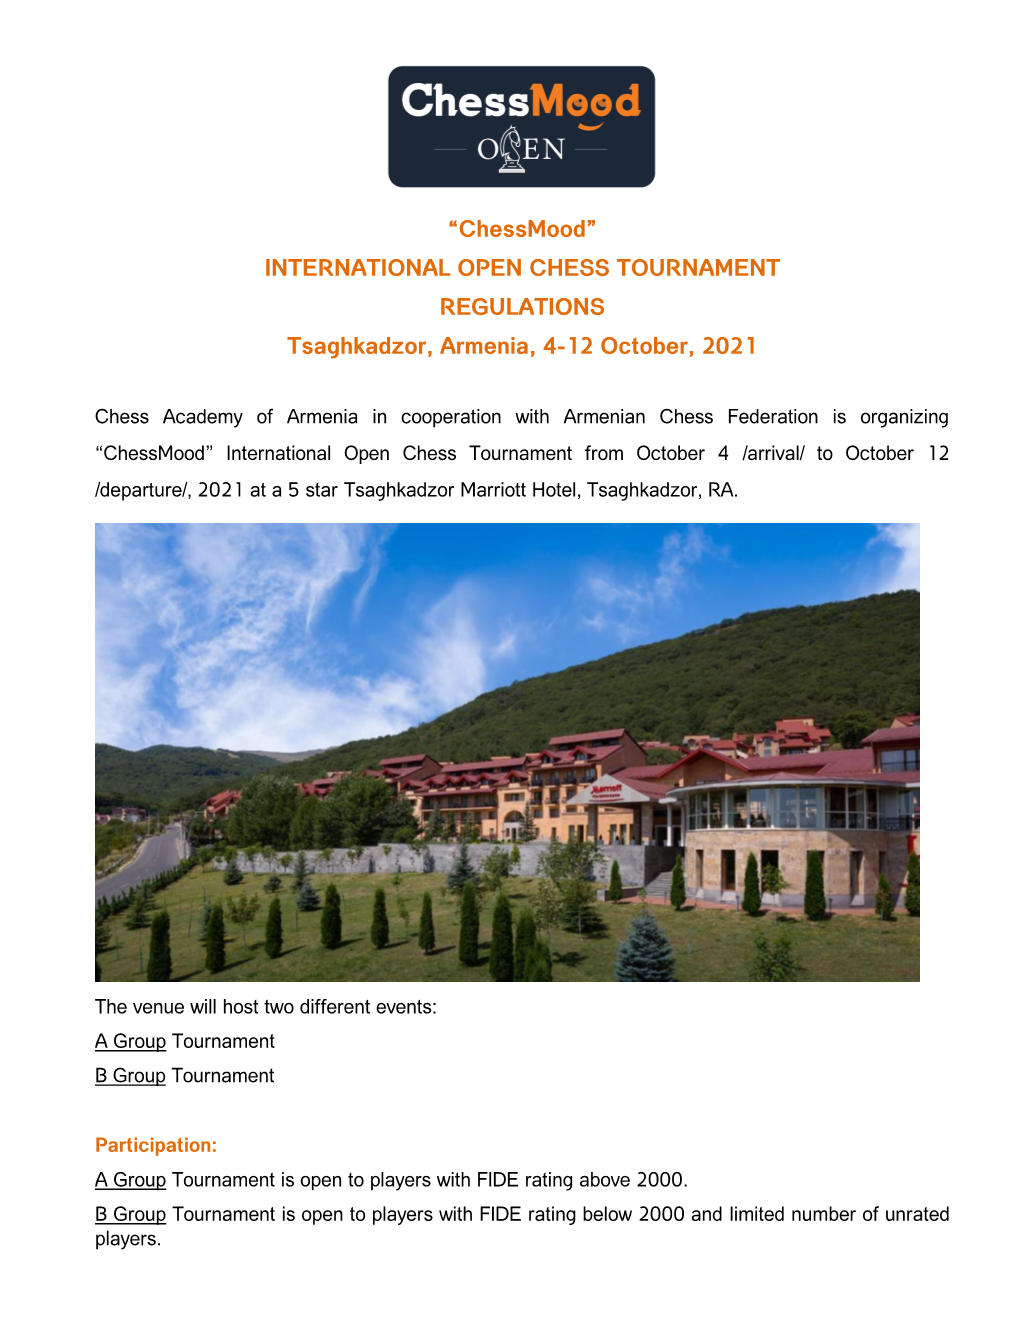 “Chessmood” INTERNATIONAL OPEN CHESS TOURNAMENT REGULATIONS Tsaghkadzor, Armenia, 4-12 October, 2021